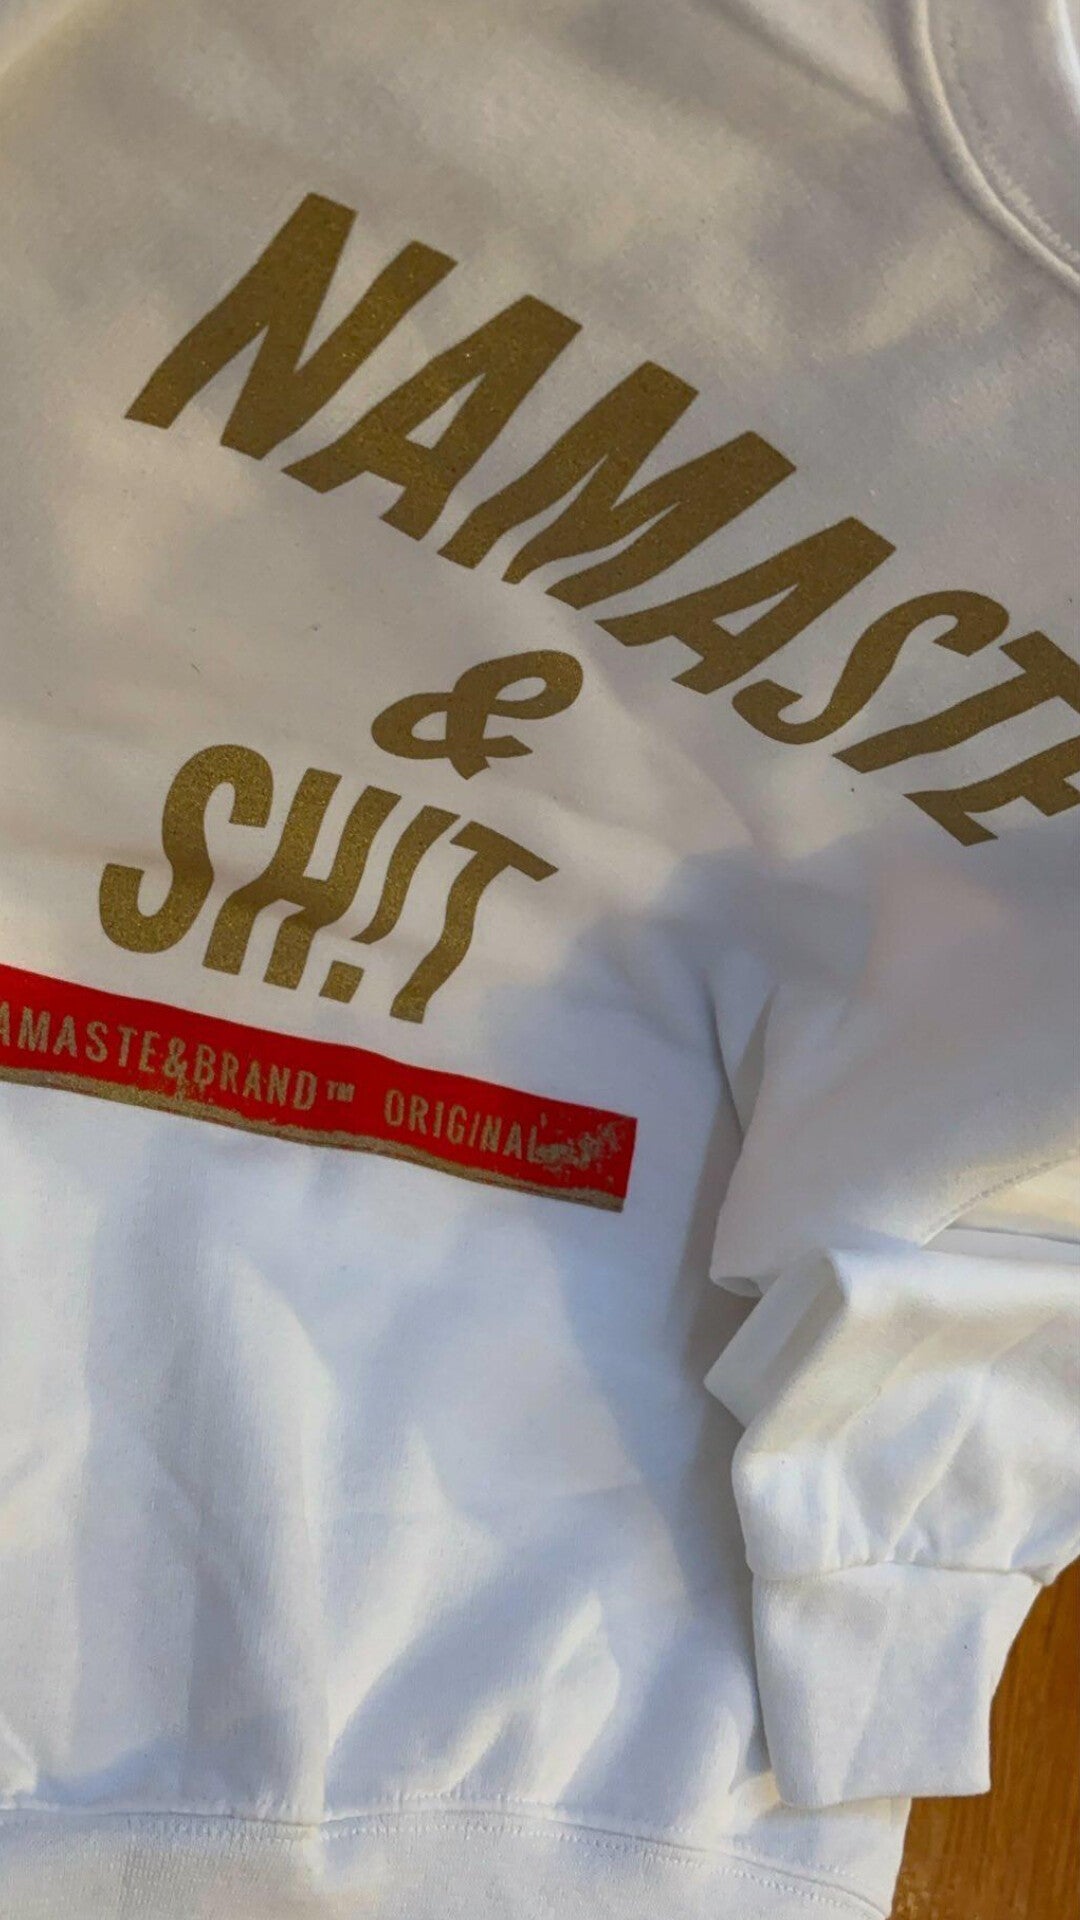 Classic Namaste & Sh!t Logo Sweatshirt (WHT/GLD)